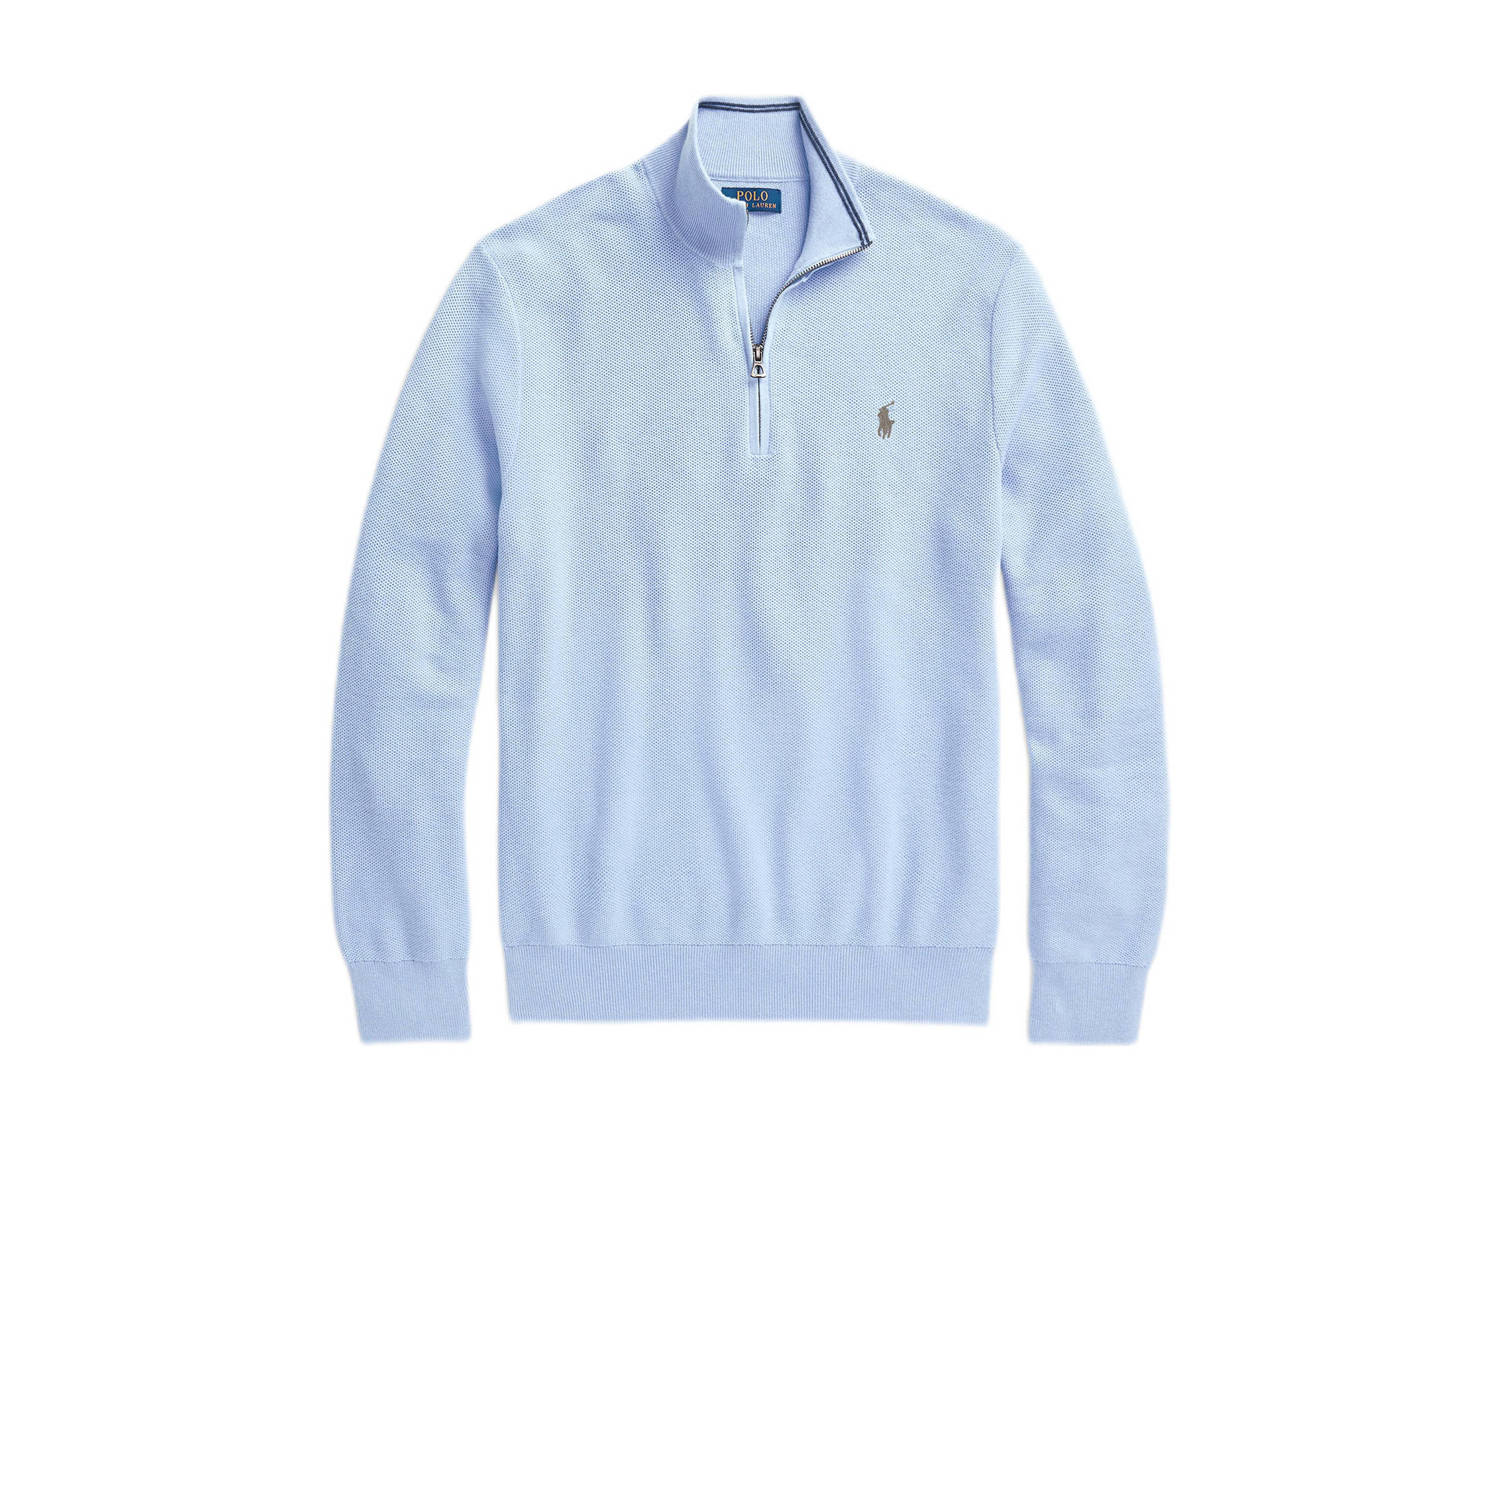 POLO Ralph Lauren trui met logo lichtblauw